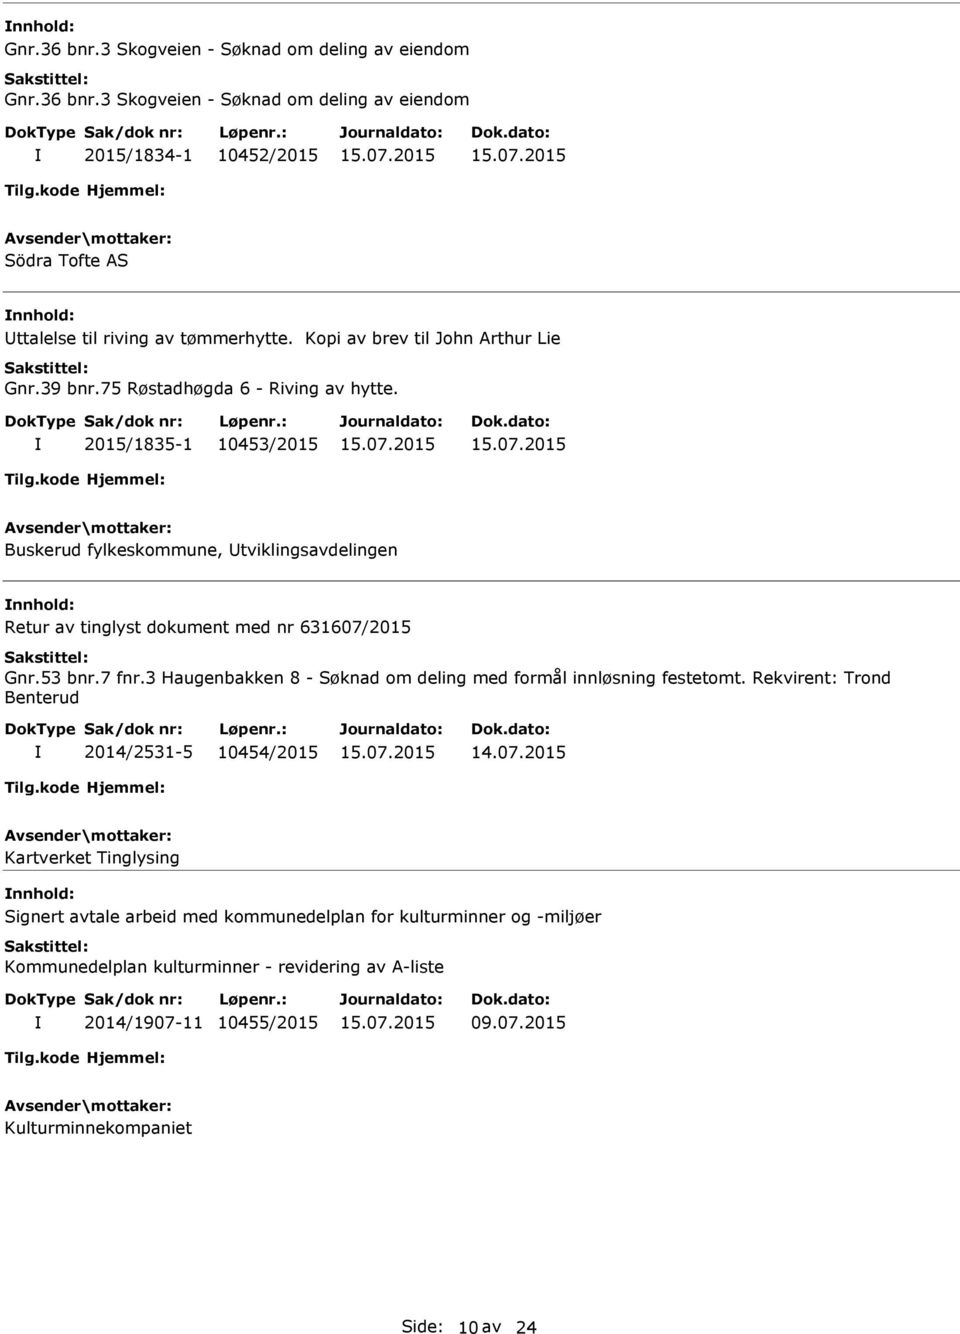 2015/1835-1 10453/2015 Buskerud fylkeskommune, tviklingsavdelingen Retur av tinglyst dokument med nr 631607/2015 Gnr.53 bnr.7 fnr.